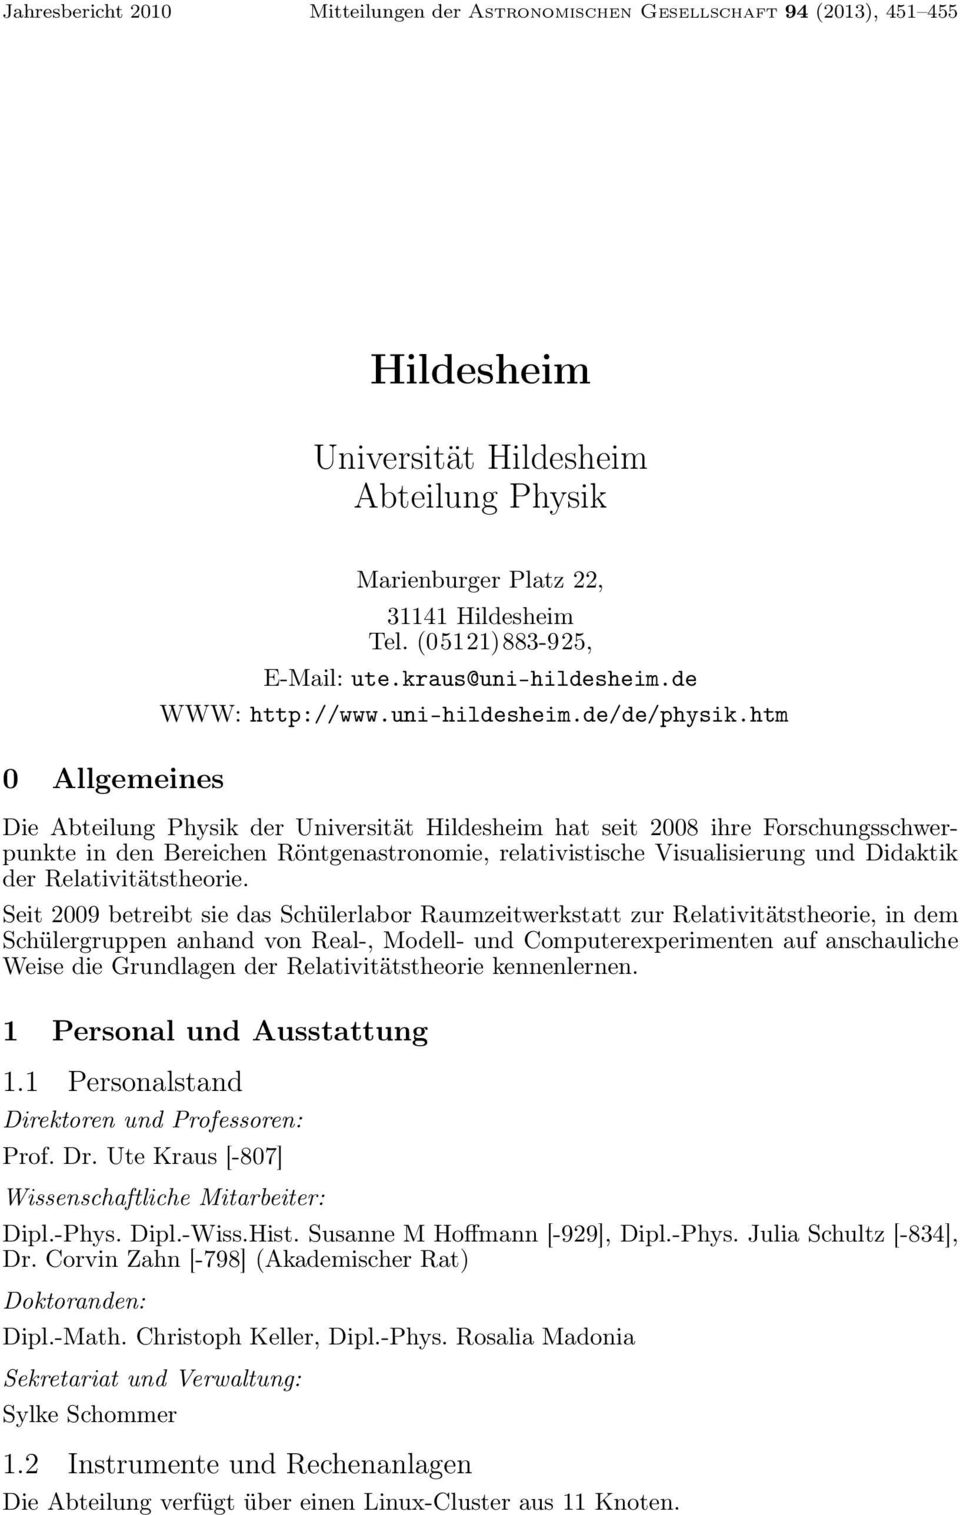 htm Die Abteilung Physik der Universität Hildesheim hat seit 2008 ihre Forschungsschwerpunkte in den Bereichen Röntgenastronomie, relativistische Visualisierung und Didaktik der Relativitätstheorie.